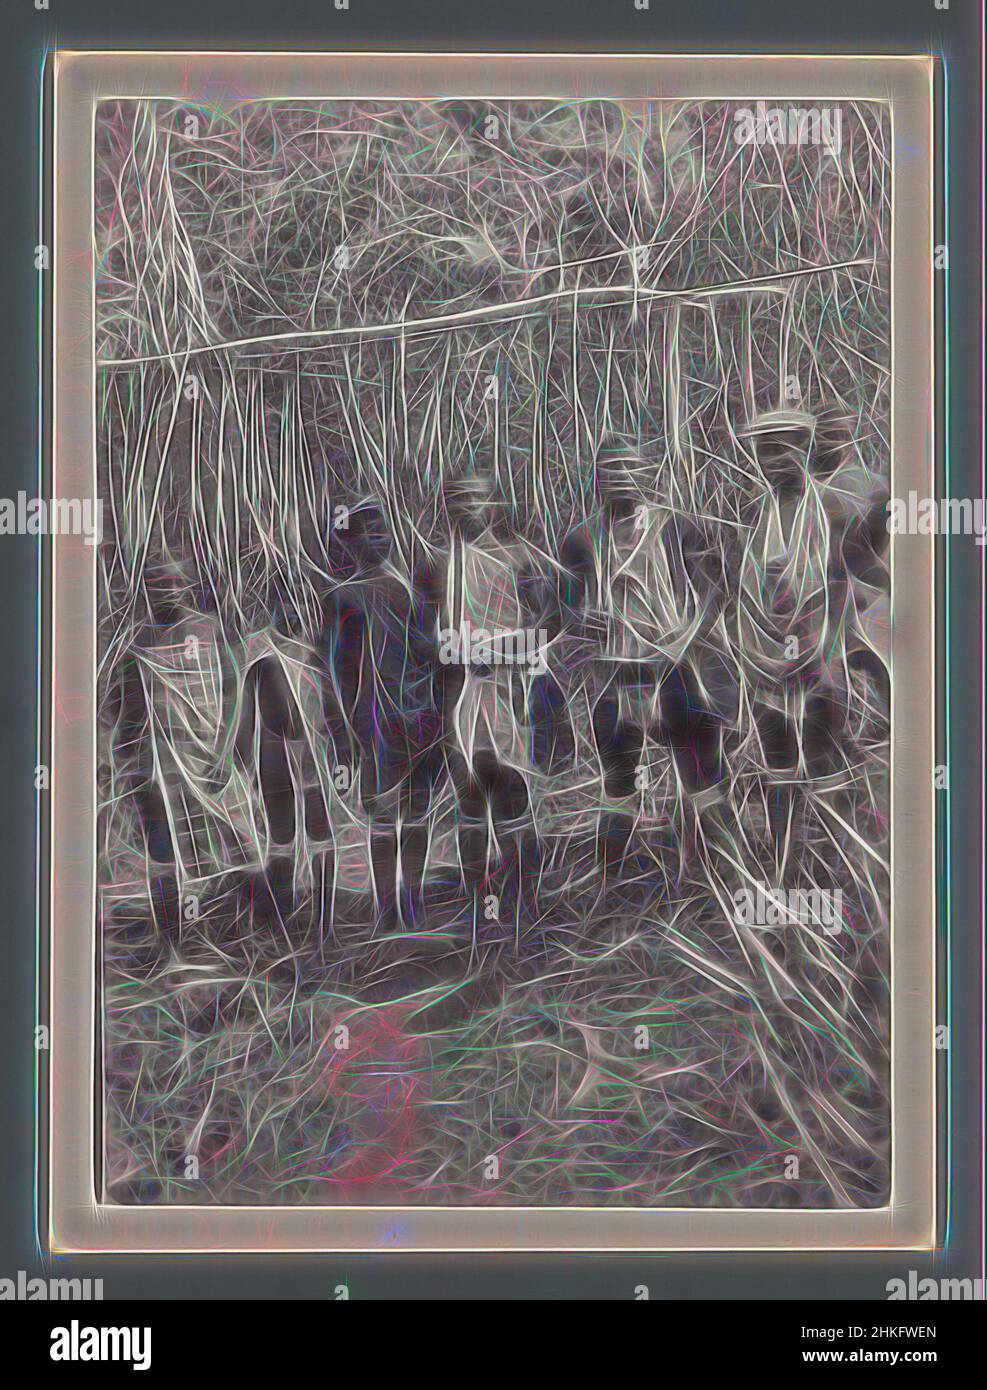 Inspiriert von sieben Maroon-Männern vor dem Eingang eines Maroon-Dorfes (vermutlich) in Suriname, c. 1910 - c. 1940, Silbergelatine-Druck, Höhe 120 mm × Breite 88 mm, neu gestaltet von Artotop. Klassische Kunst neu erfunden mit einem modernen Twist. Design von warmen fröhlichen Leuchten der Helligkeit und Lichtstrahl Strahlkraft. Fotografie inspiriert von Surrealismus und Futurismus, umarmt dynamische Energie der modernen Technologie, Bewegung, Geschwindigkeit und Kultur zu revolutionieren Stockfoto